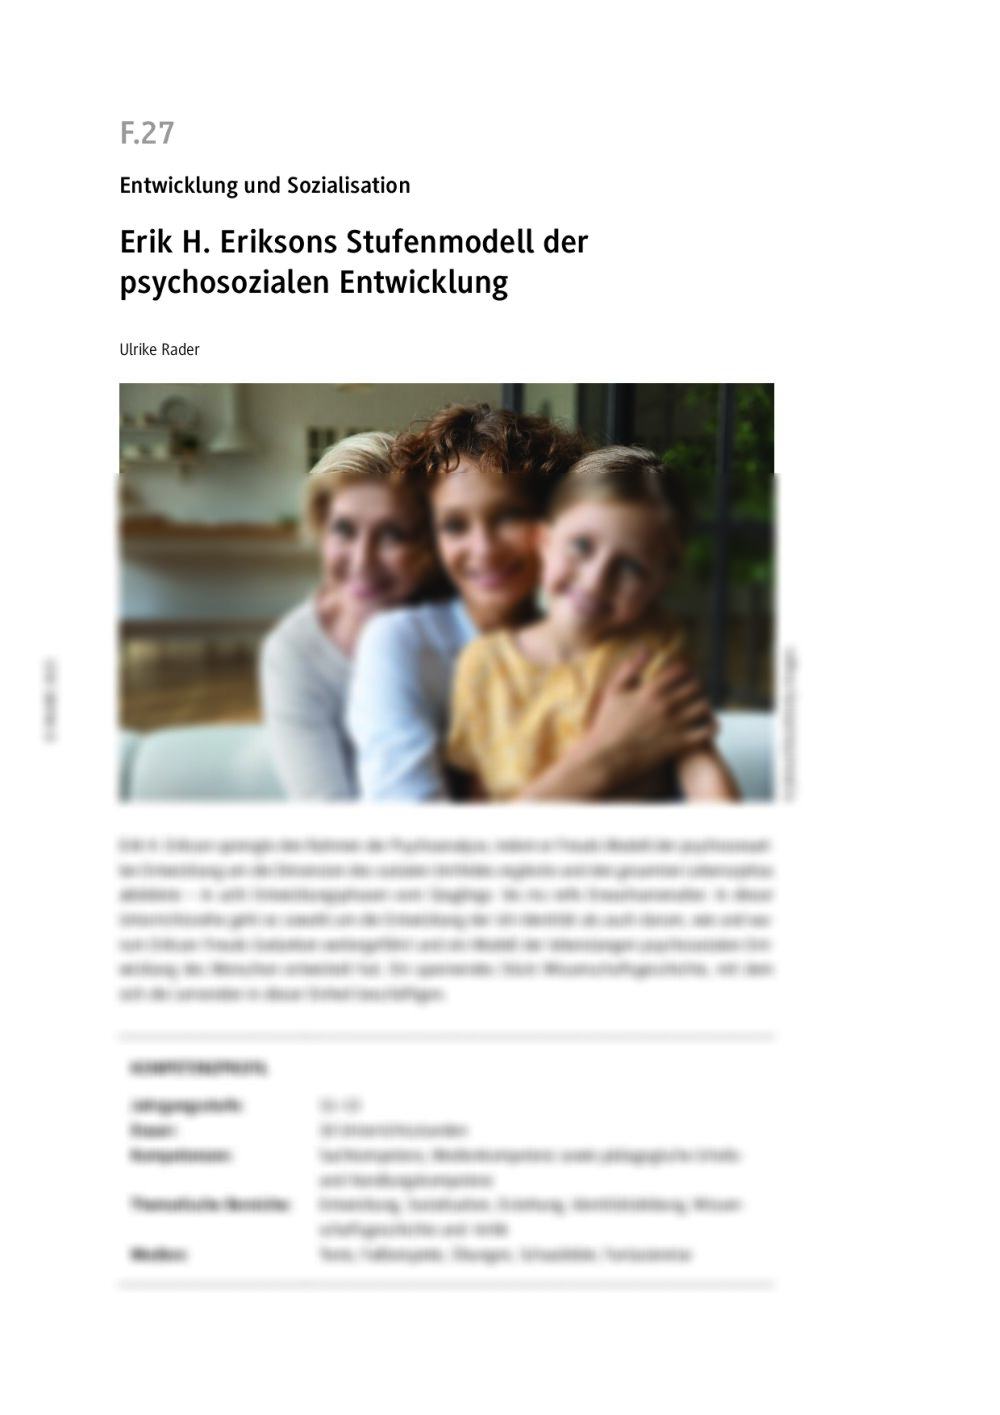 Erik H. Eriksons Stufenmodell der psychosozialen Entwicklung  - Seite 1